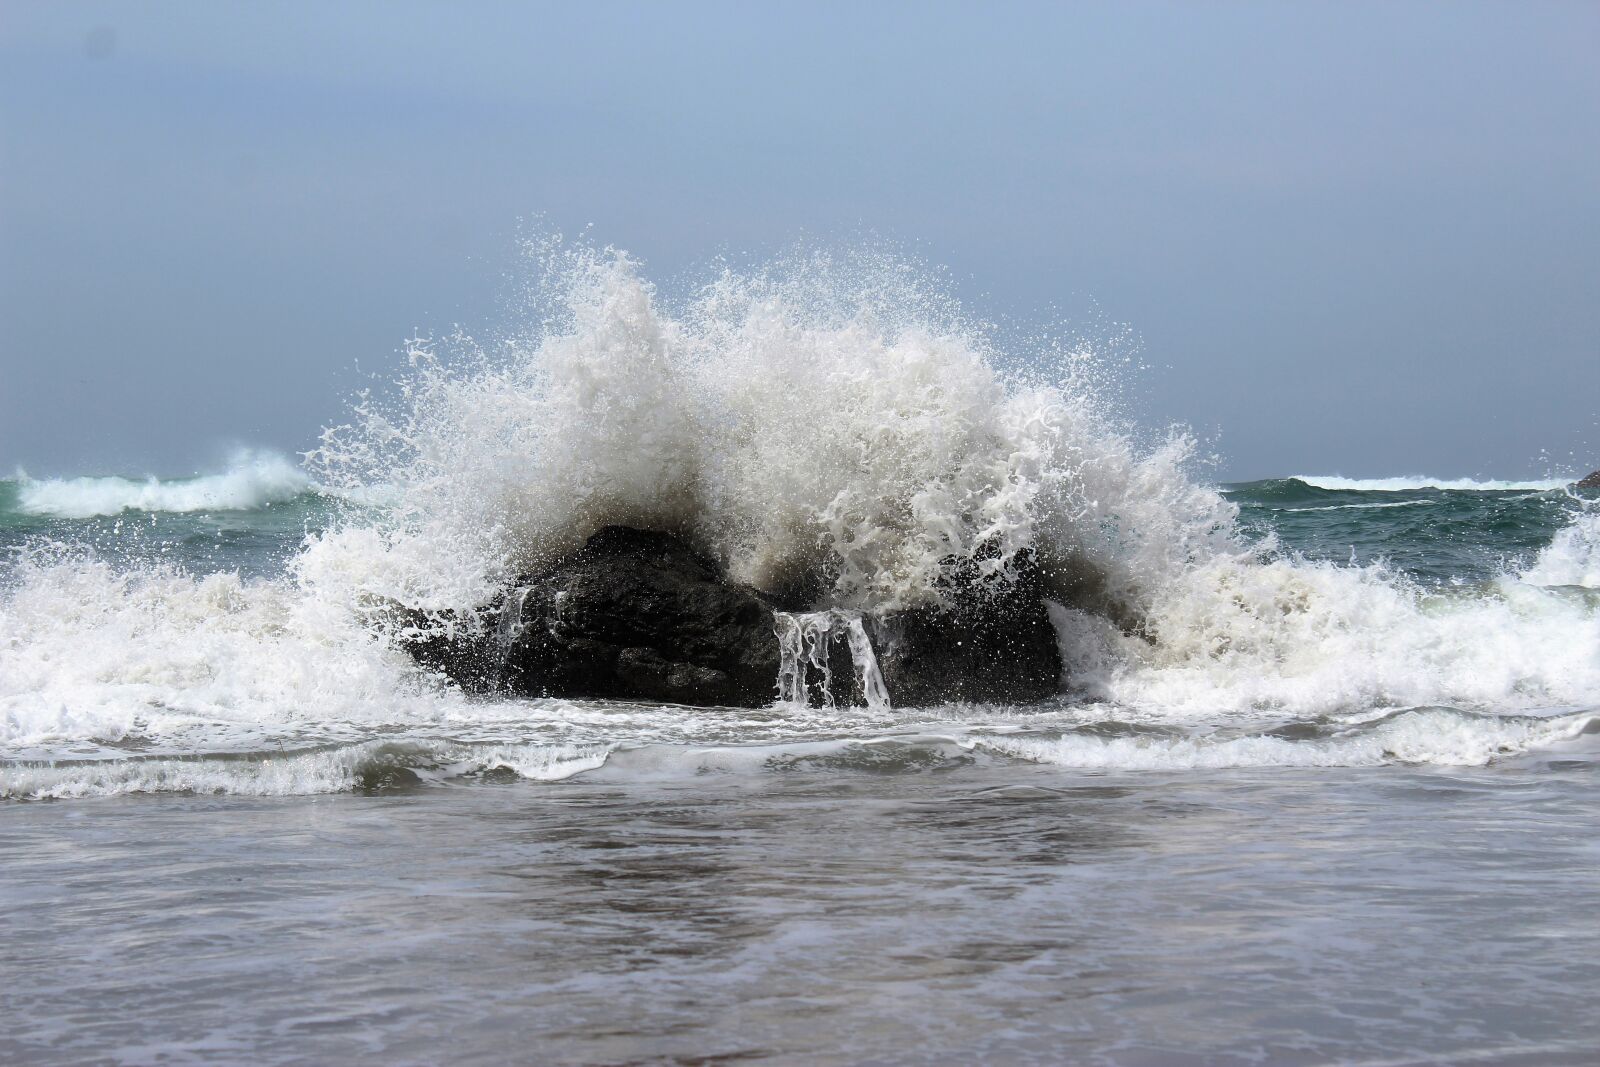 Canon EOS 1200D (EOS Rebel T5 / EOS Kiss X70 / EOS Hi) sample photo. Crashing wave, ocean, wave photography